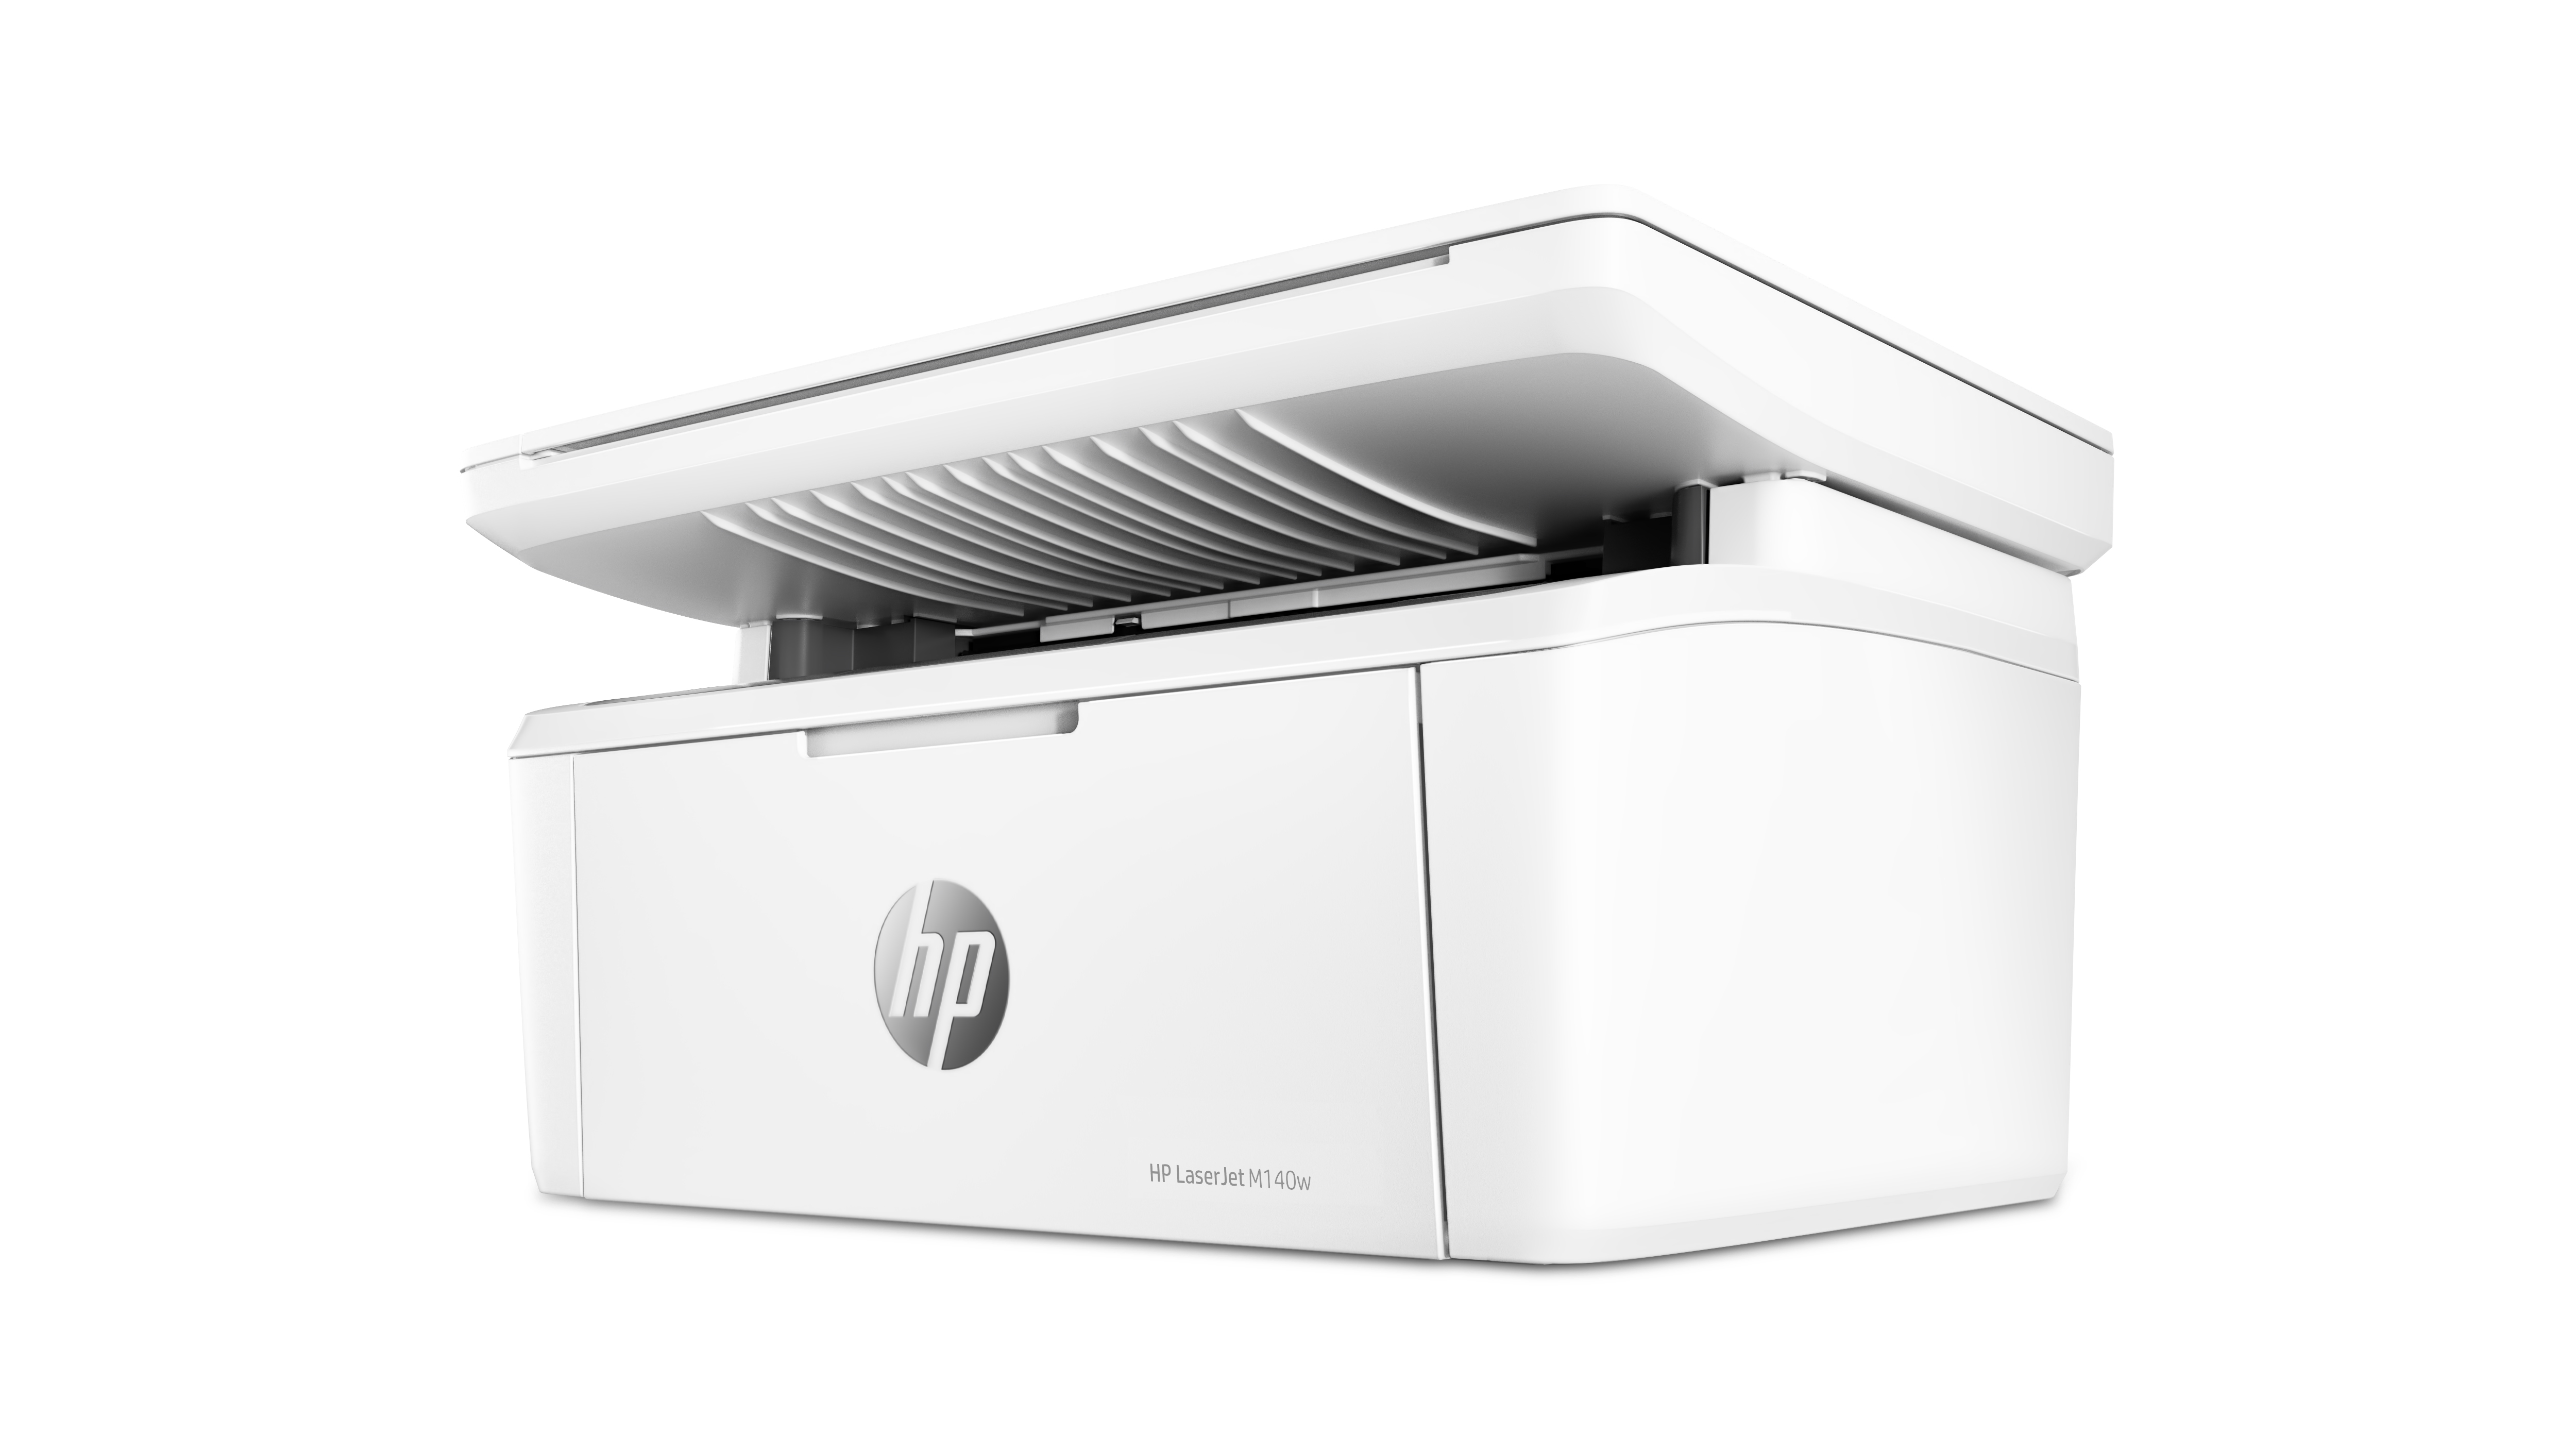 Image of HP LaserJet Stampante multifunzione M140w, Bianco e nero, Stampante per Piccoli uffici, Stampa, copia, scansione, Scansione verso e-mail; scansione verso PDF; dimensioni compatte